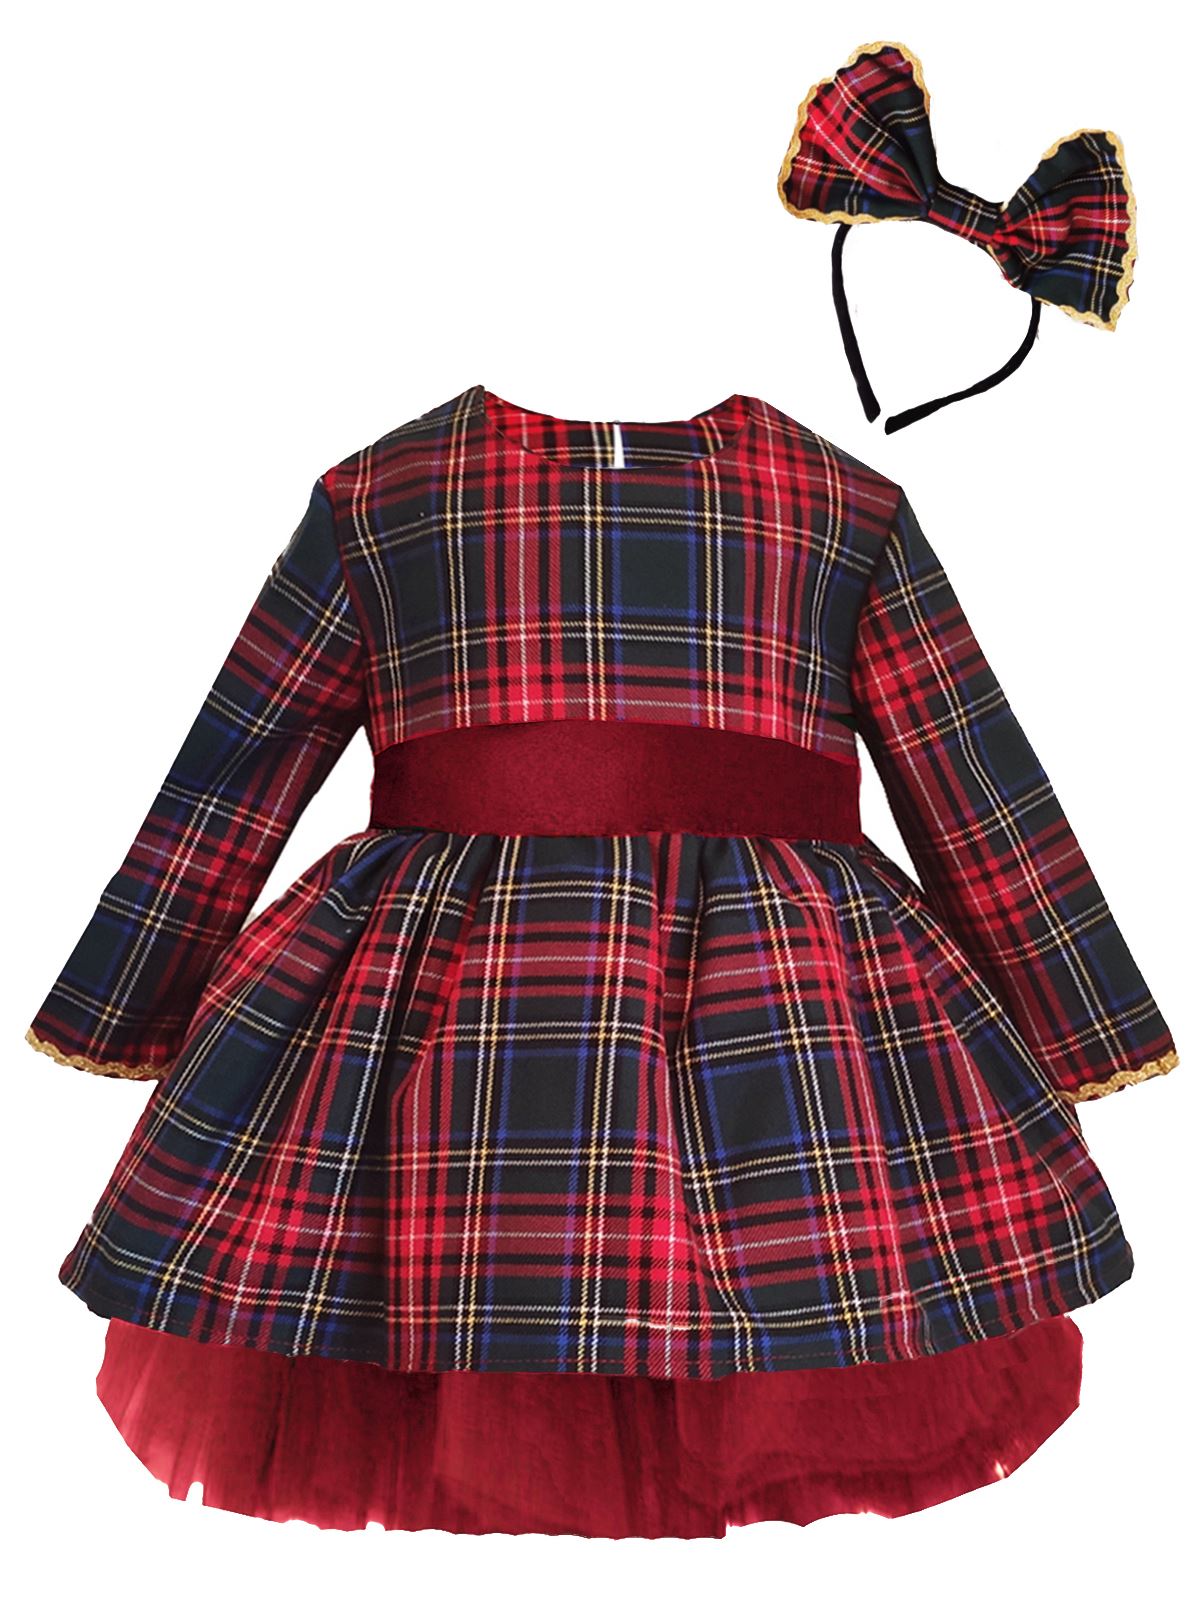 Shecco Babba Kız Çocuk Tütü Elbise Taç Takım Fiyonk 6-10 Yaş Kırmızı